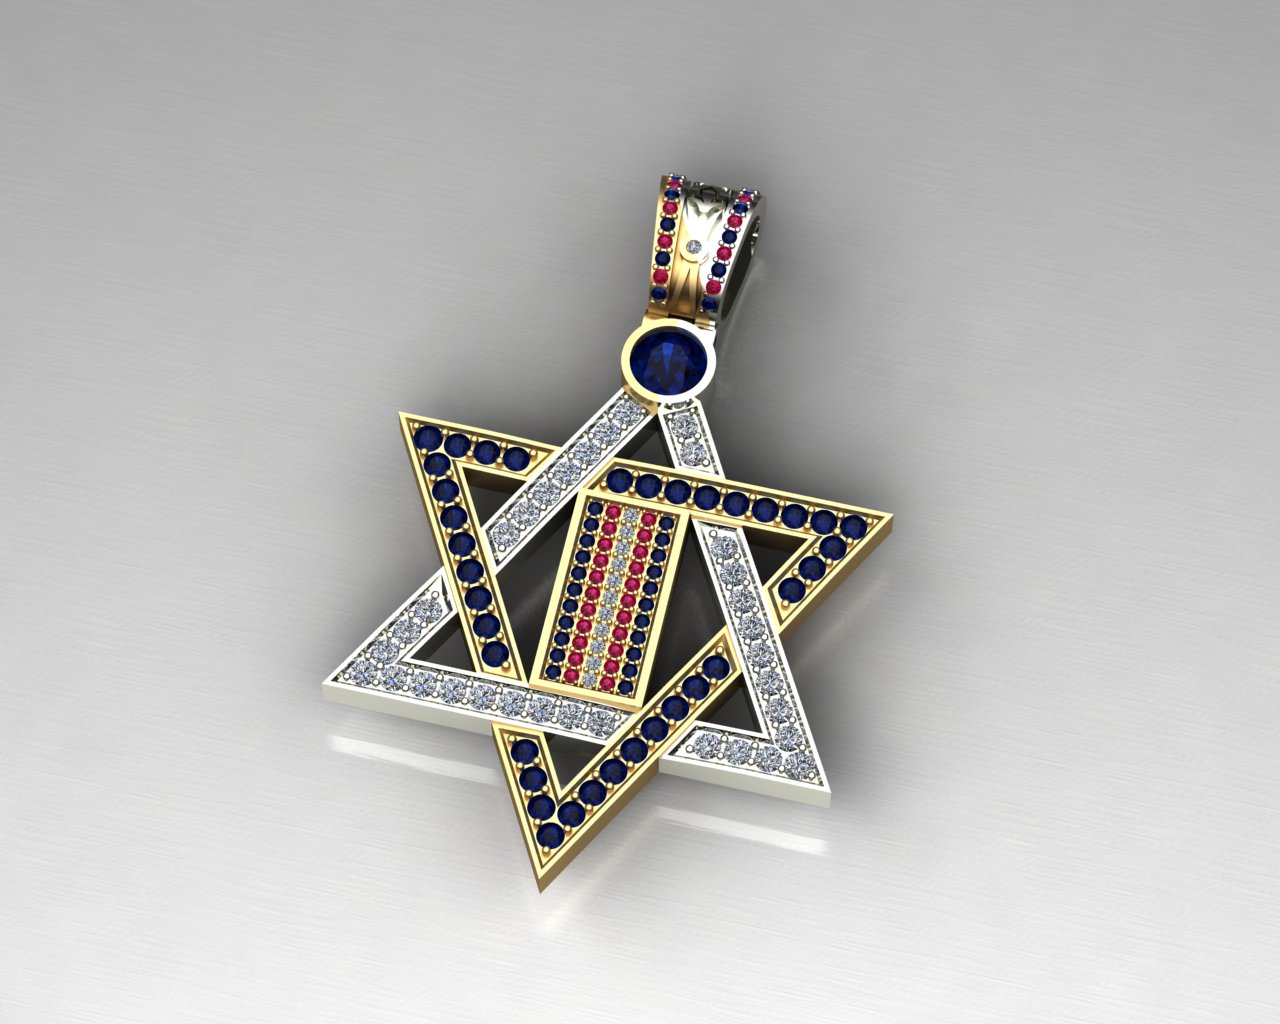 Медальон двухцветный Звезда Давида с инкрустацией (Вес: 22 гр.)